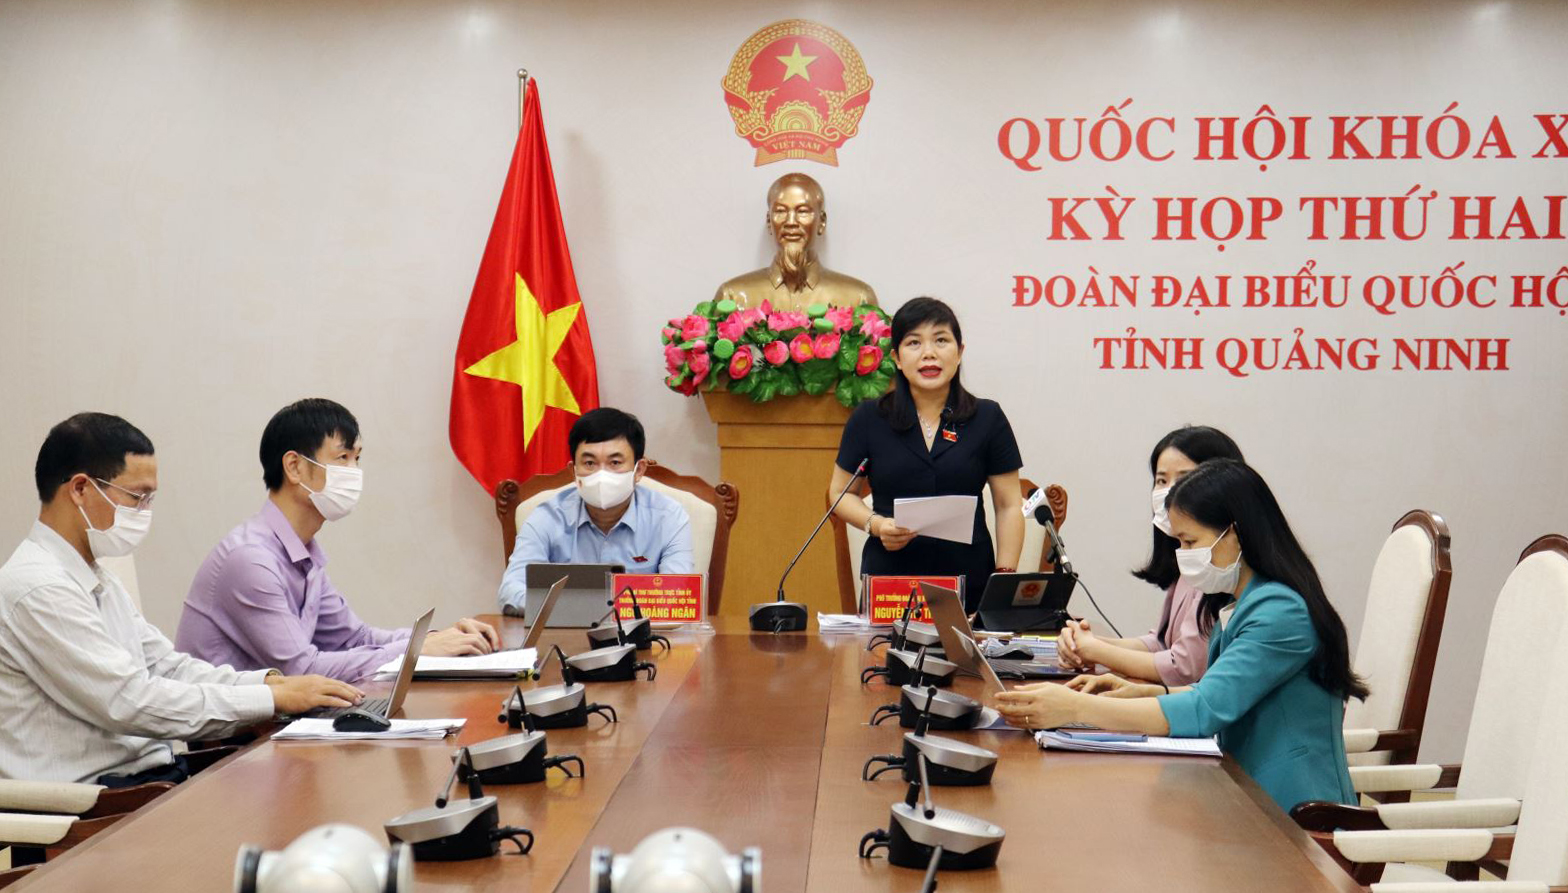 Phó trưởng Đoàn ĐBQH tỉnh Quảng Ninh Nguyễn Thị Thu Hà phát biểu tại điểm cầu Quảng Ninh - ảnh: MẠNH TUÂN